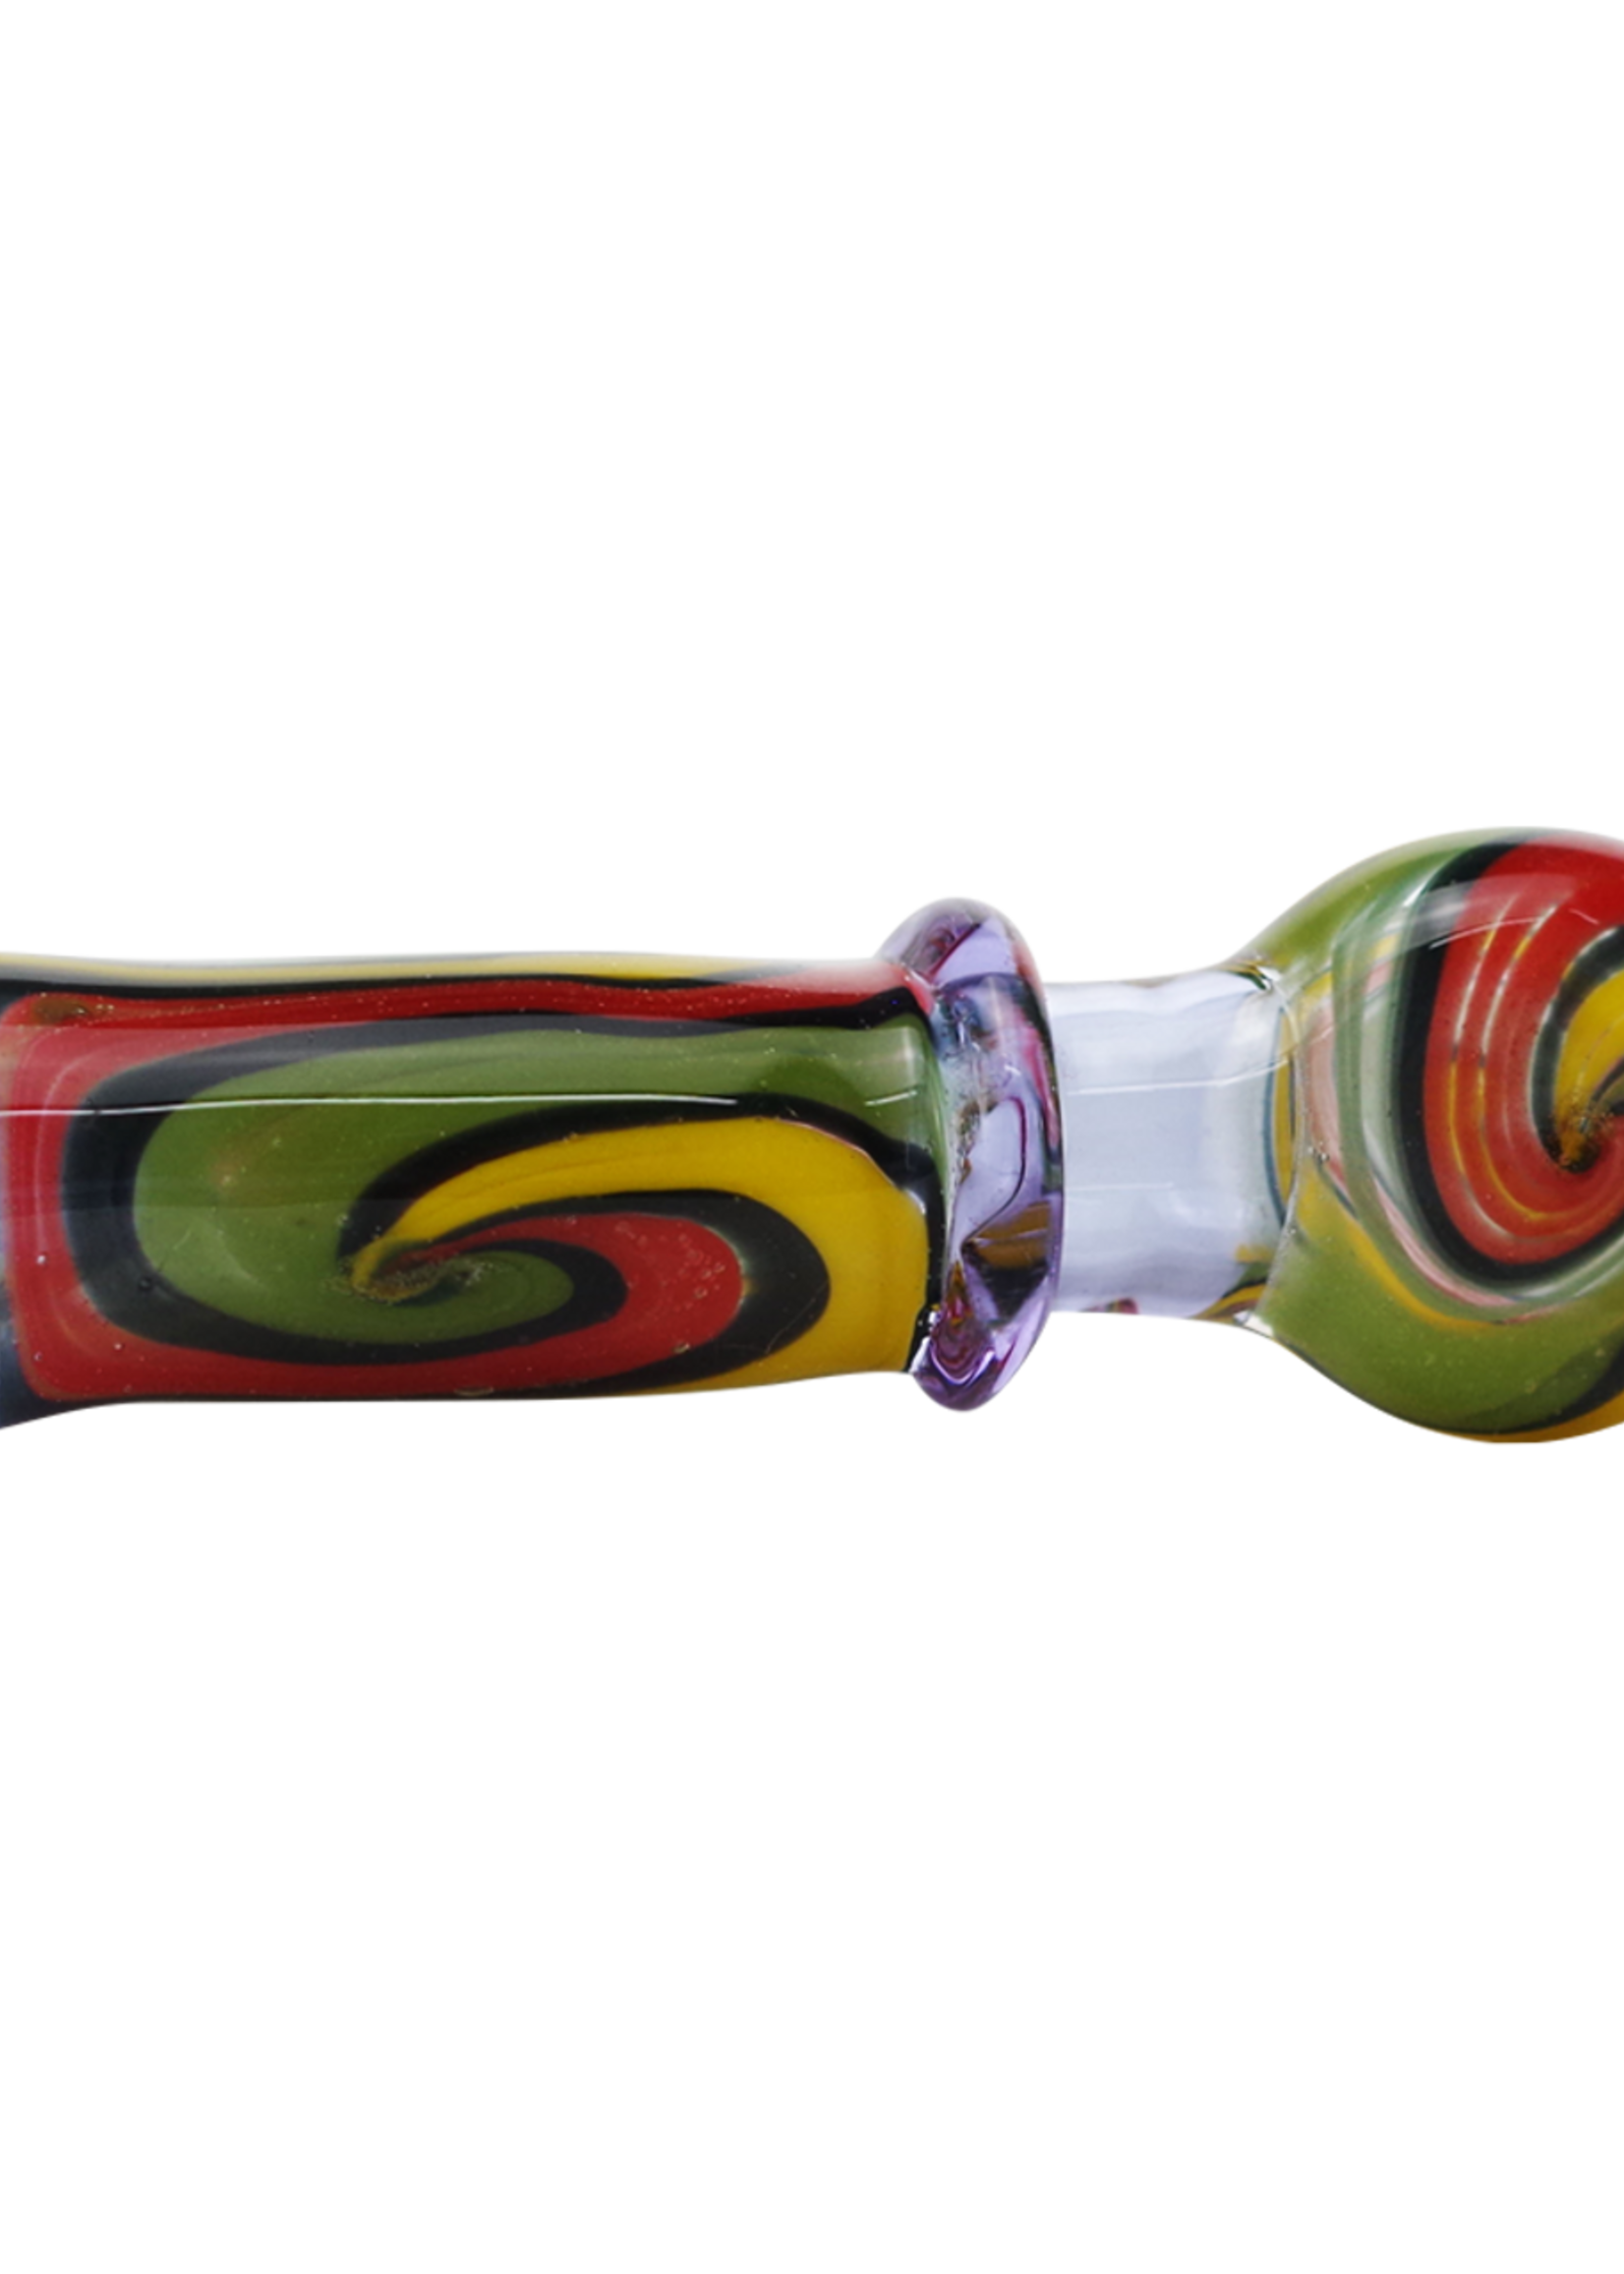 3" Glass Chillum Hand Pipe Colorful Swirl Design - #1820